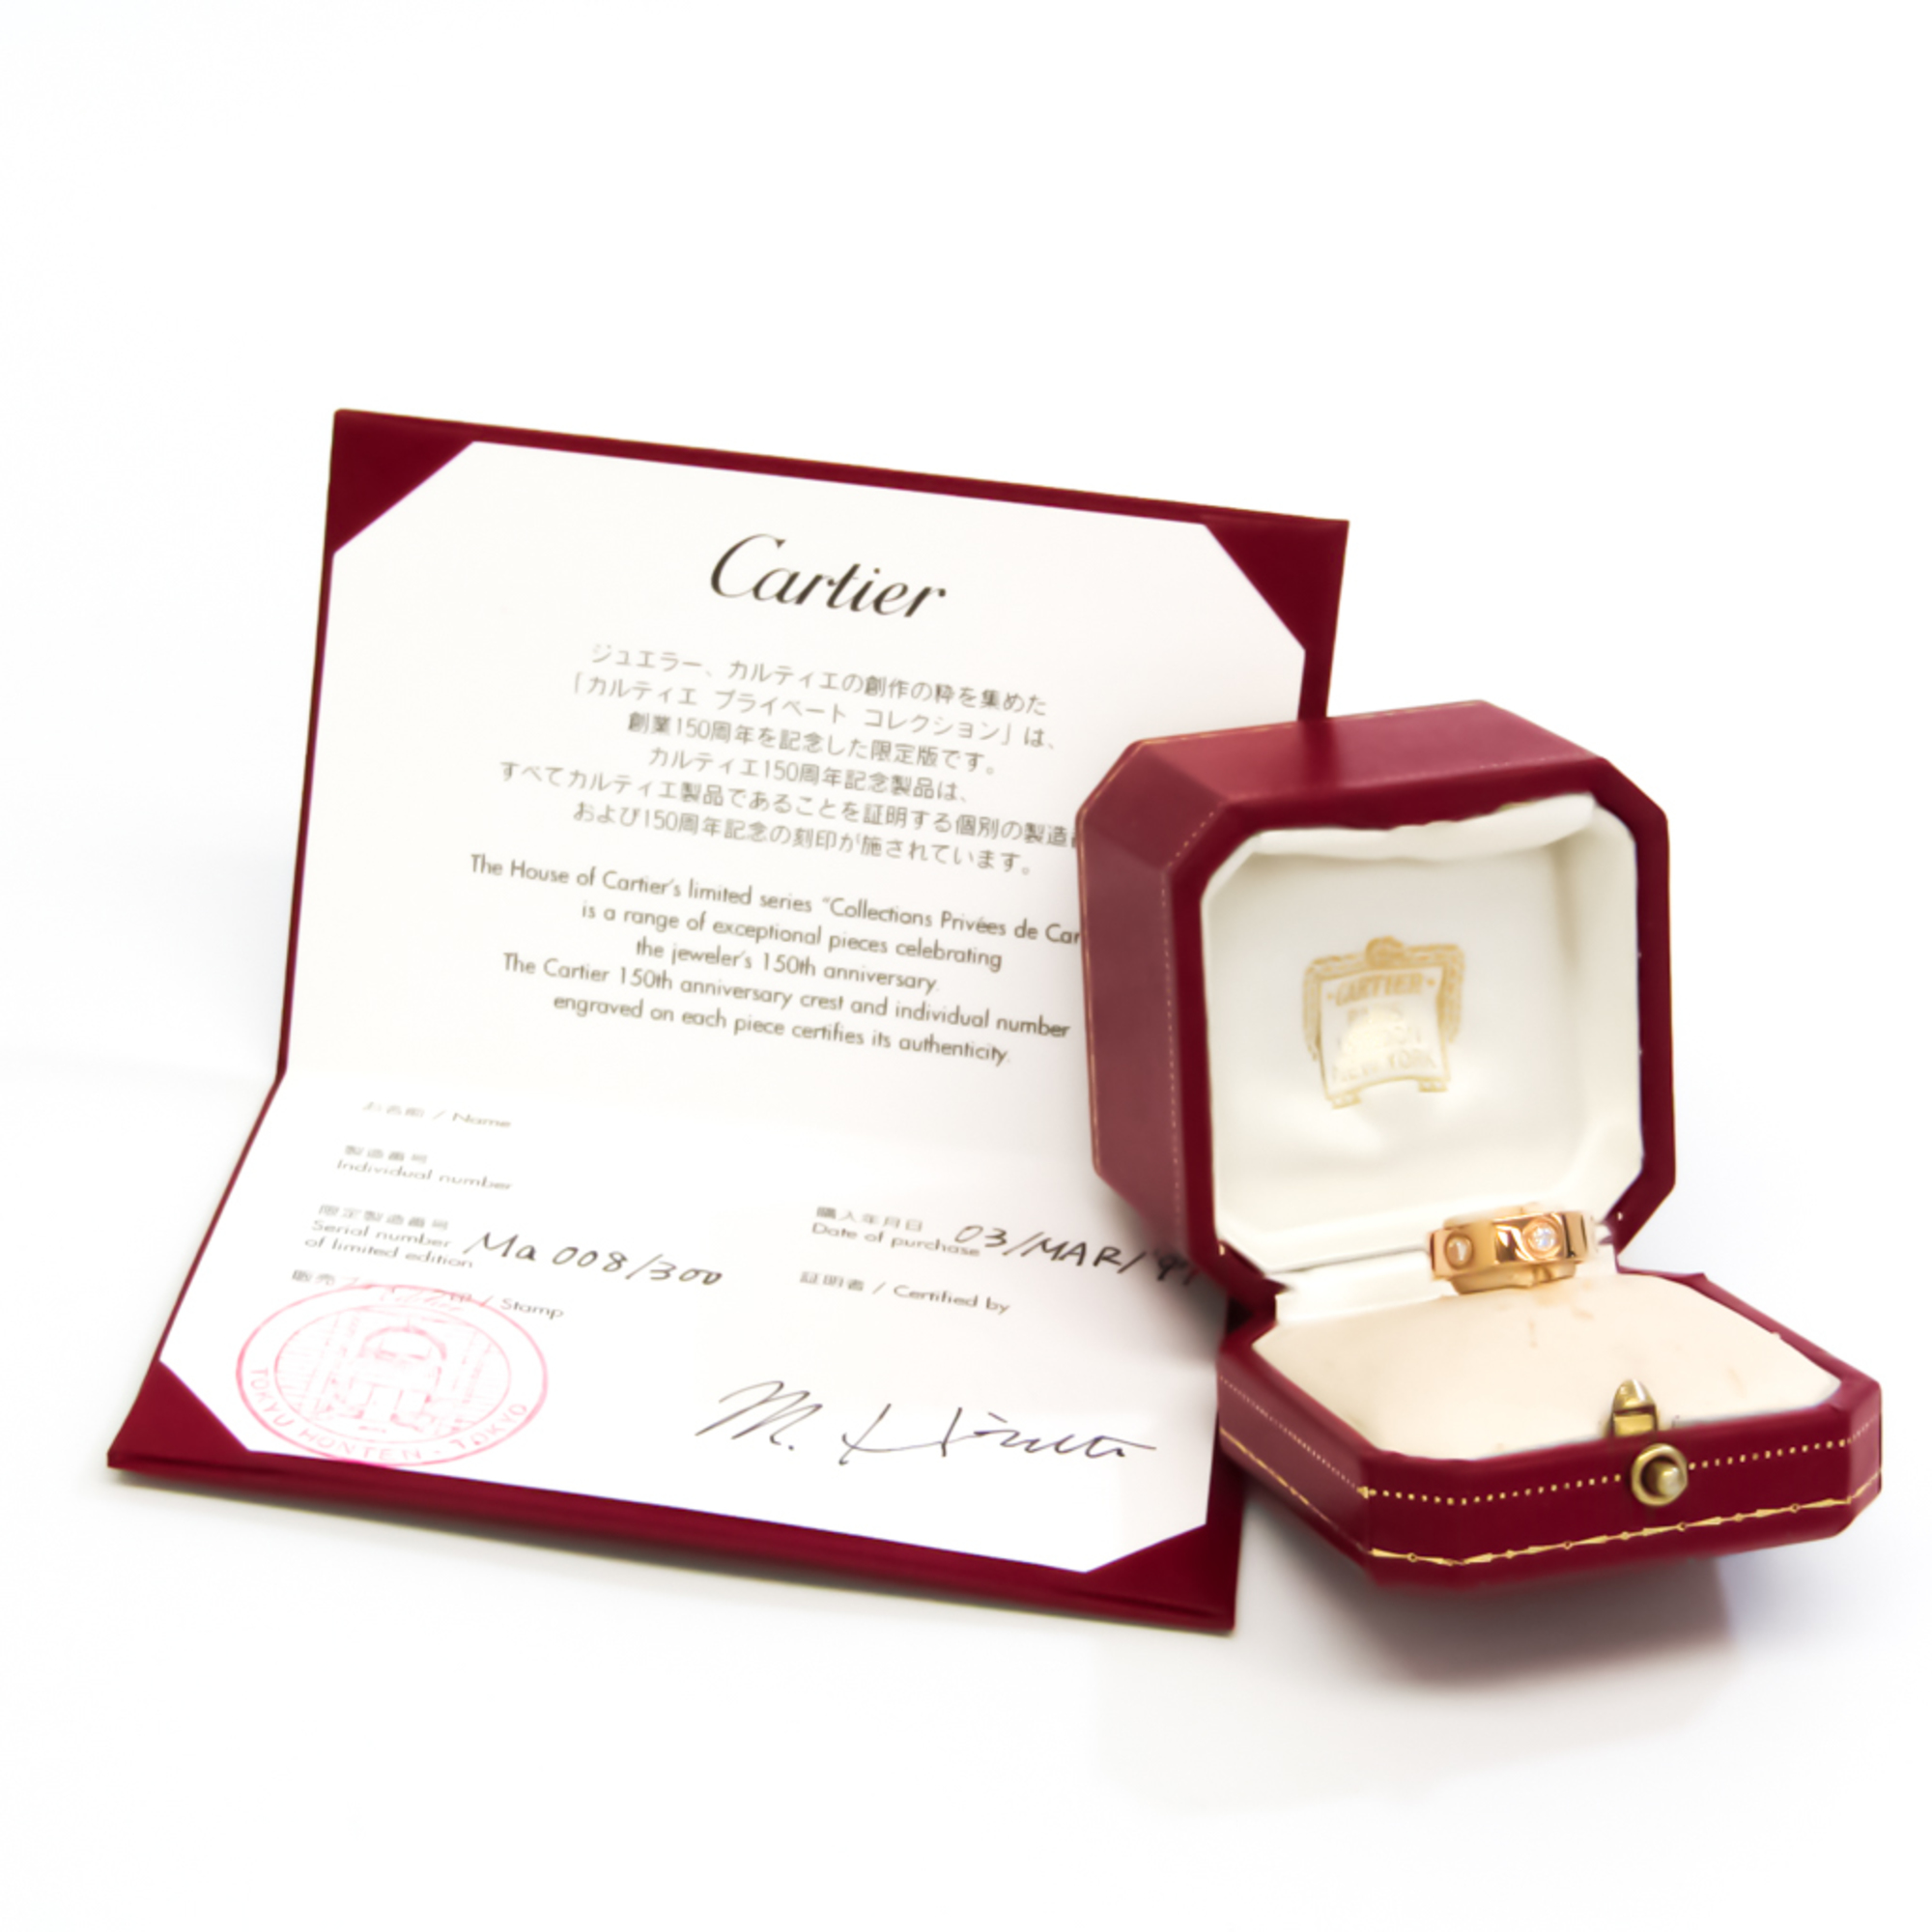 カルティエ(Cartier) ラブ フルダイヤモンドリング 150周年記念限定 K18ピンクゴールド(K18PG) ダイヤモンド バンドリング